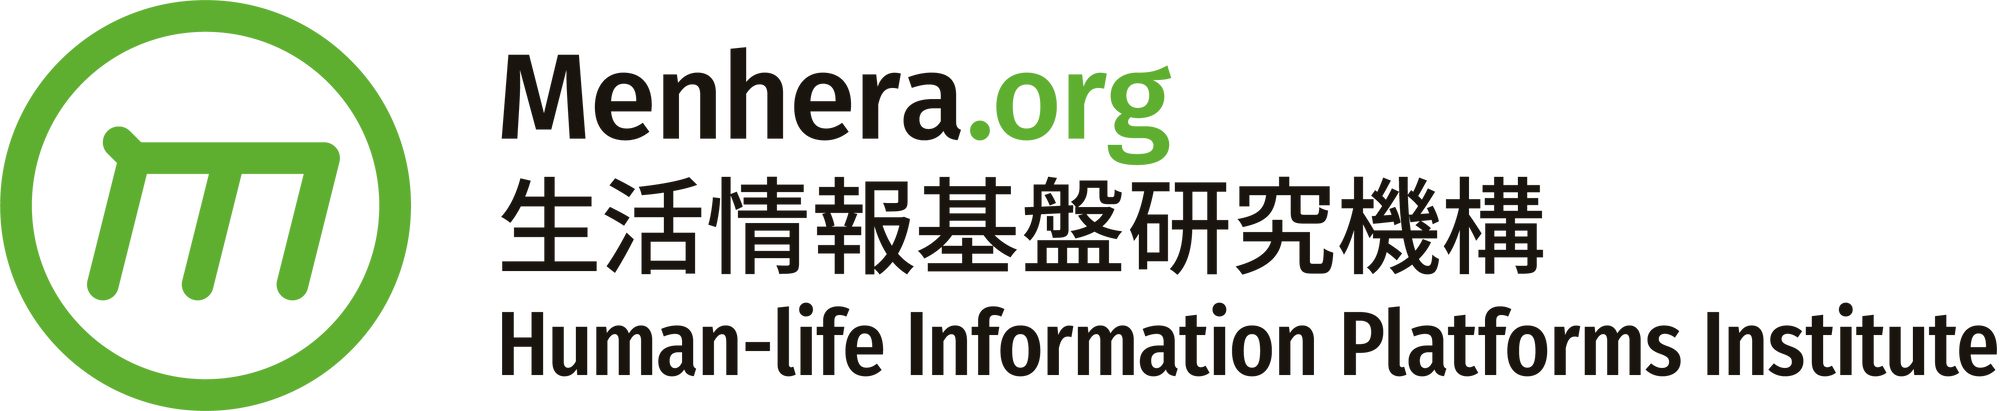 Menhera.org - Human-life Information Platforms Institute